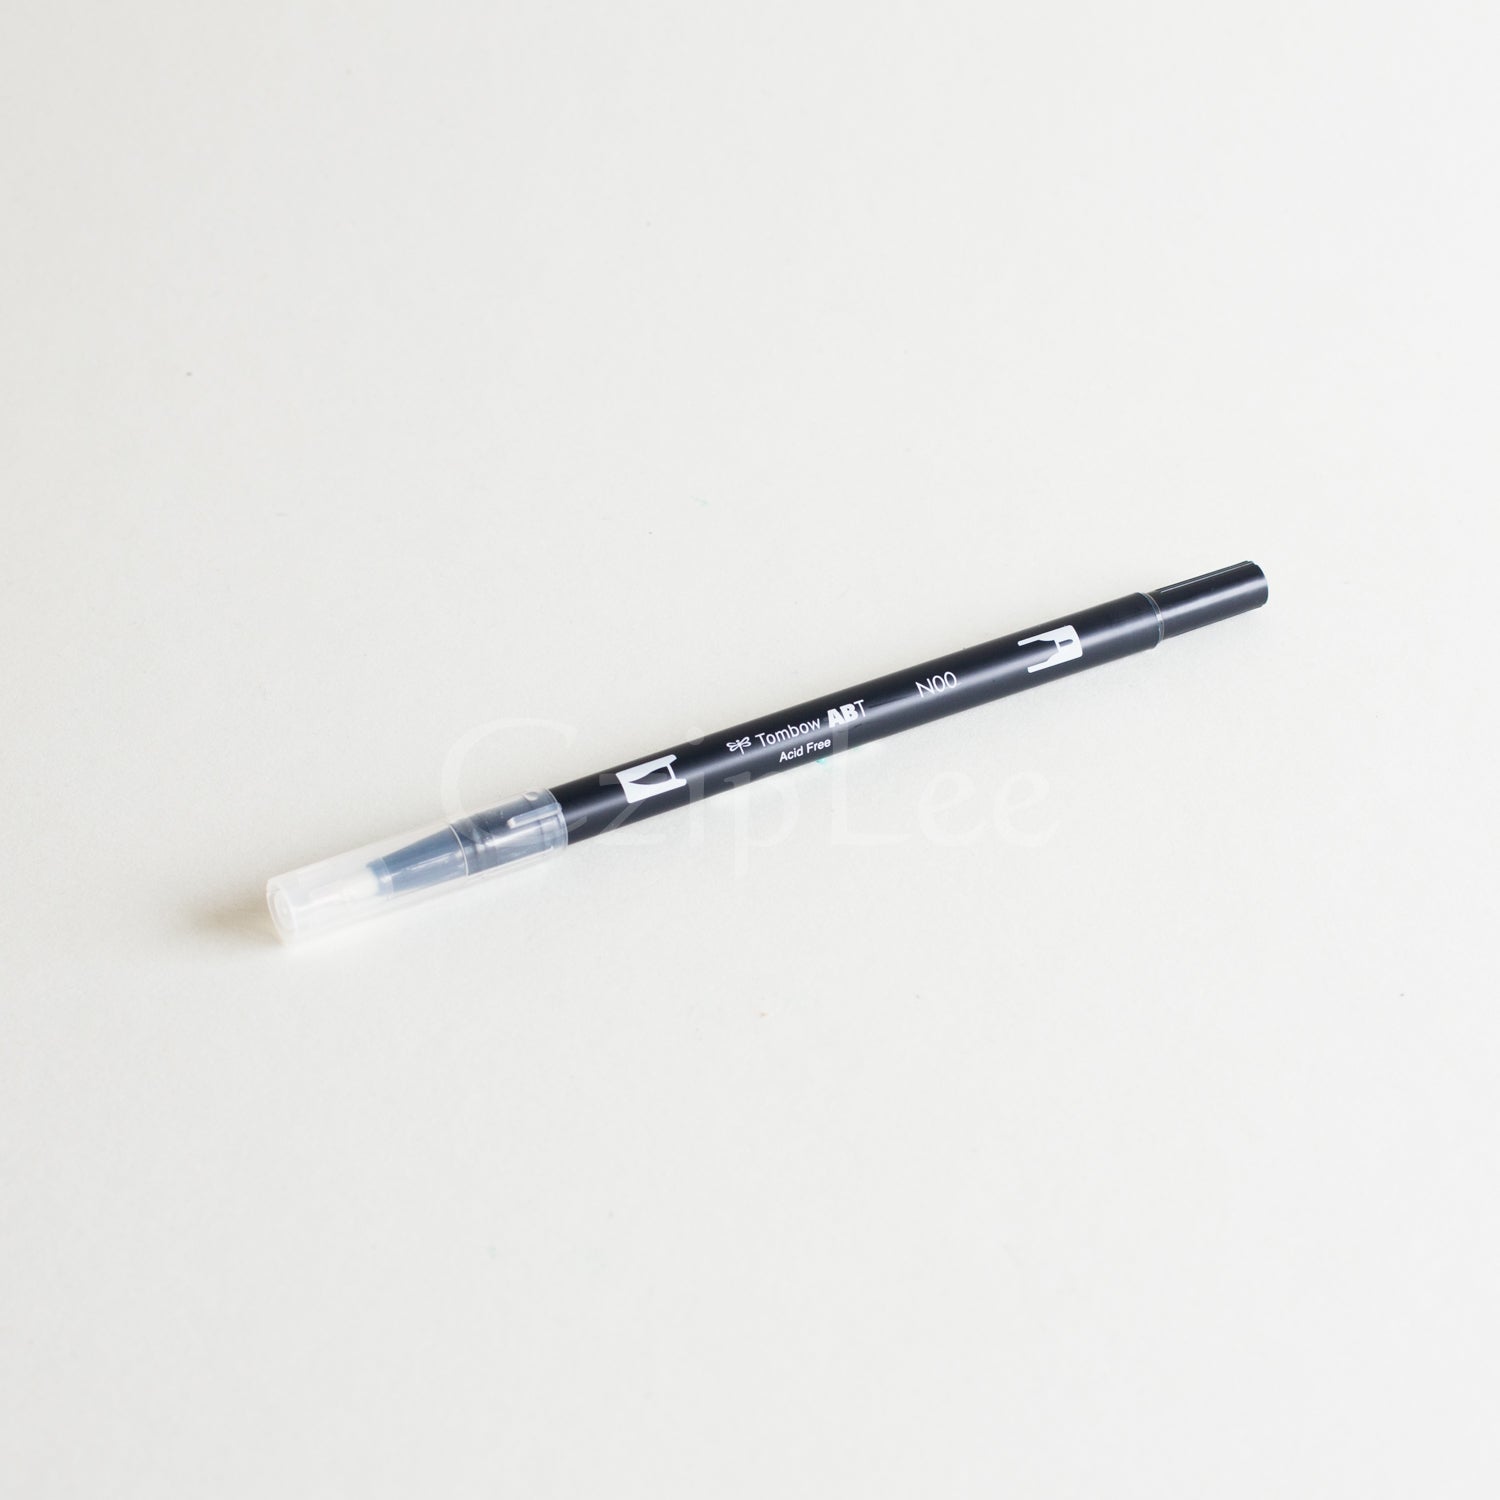 TOMBOW ABT Dual Brush Pen N00-Colourless Blender